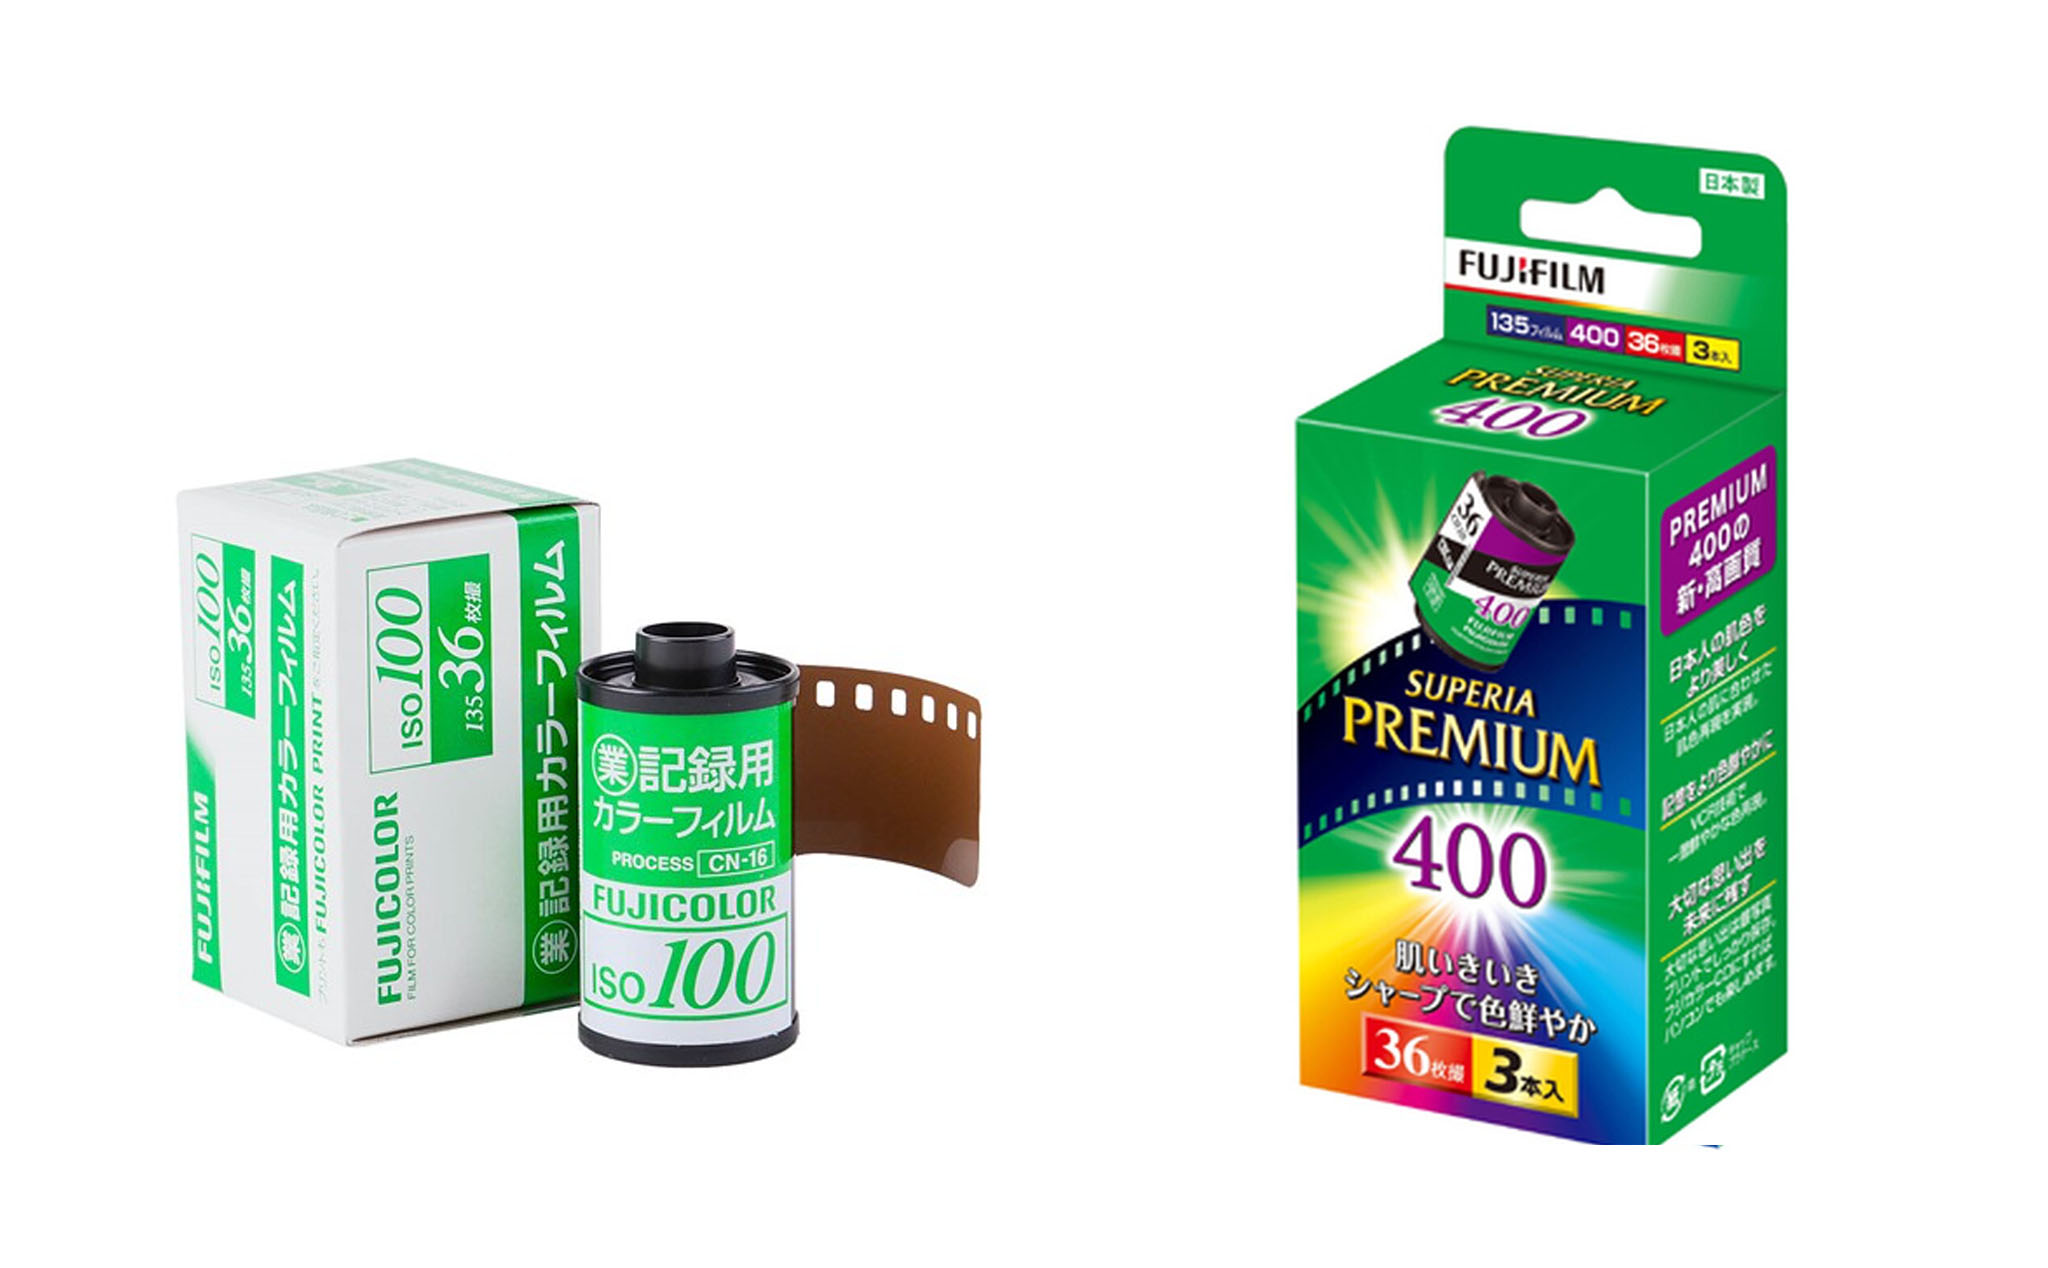 Fuji ngừng sản xuất hộp 3 cuộn film Fujicolor và Superia vì nhu cầu giảm